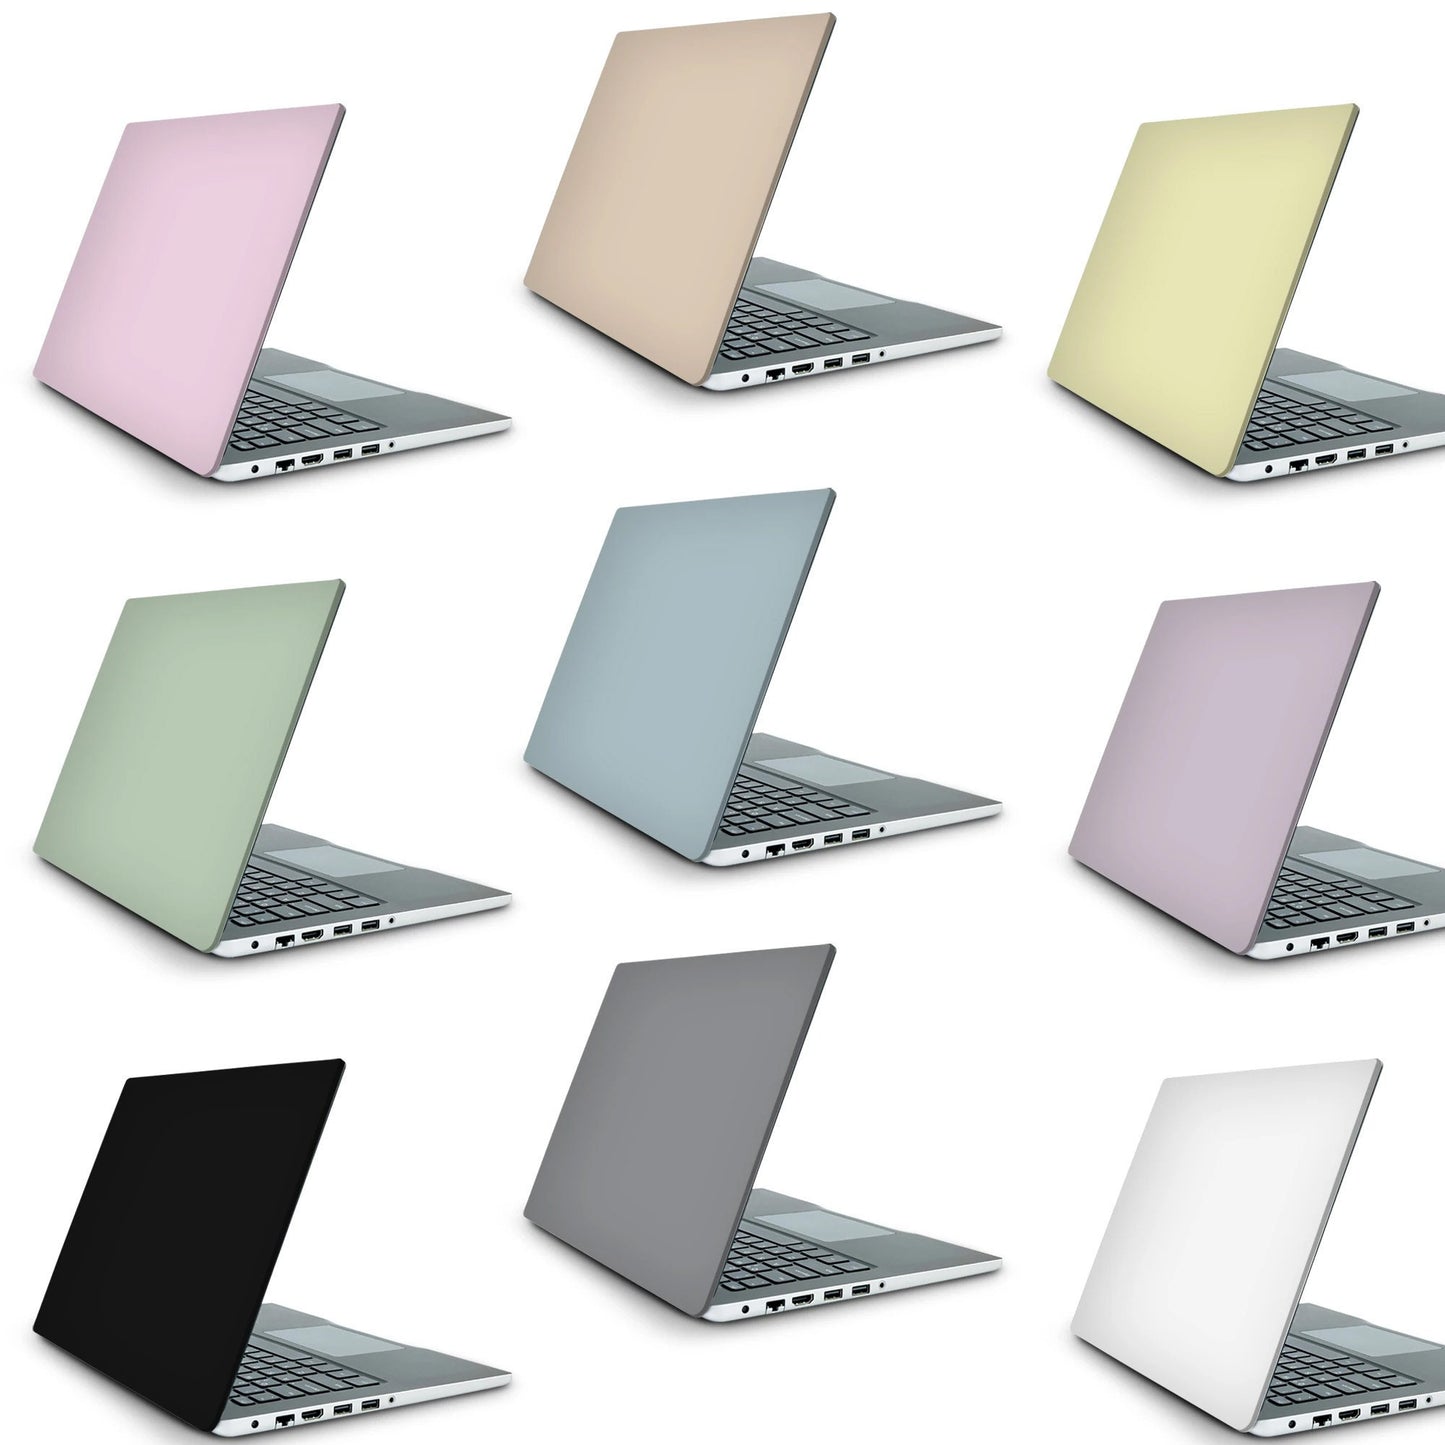 Constellations Laptop Skin, Laptop Cover, Laptop Skins, Removable Laptop Skins, Laptop Decal, Customized Laptop Skin, Laptop Stickers 188